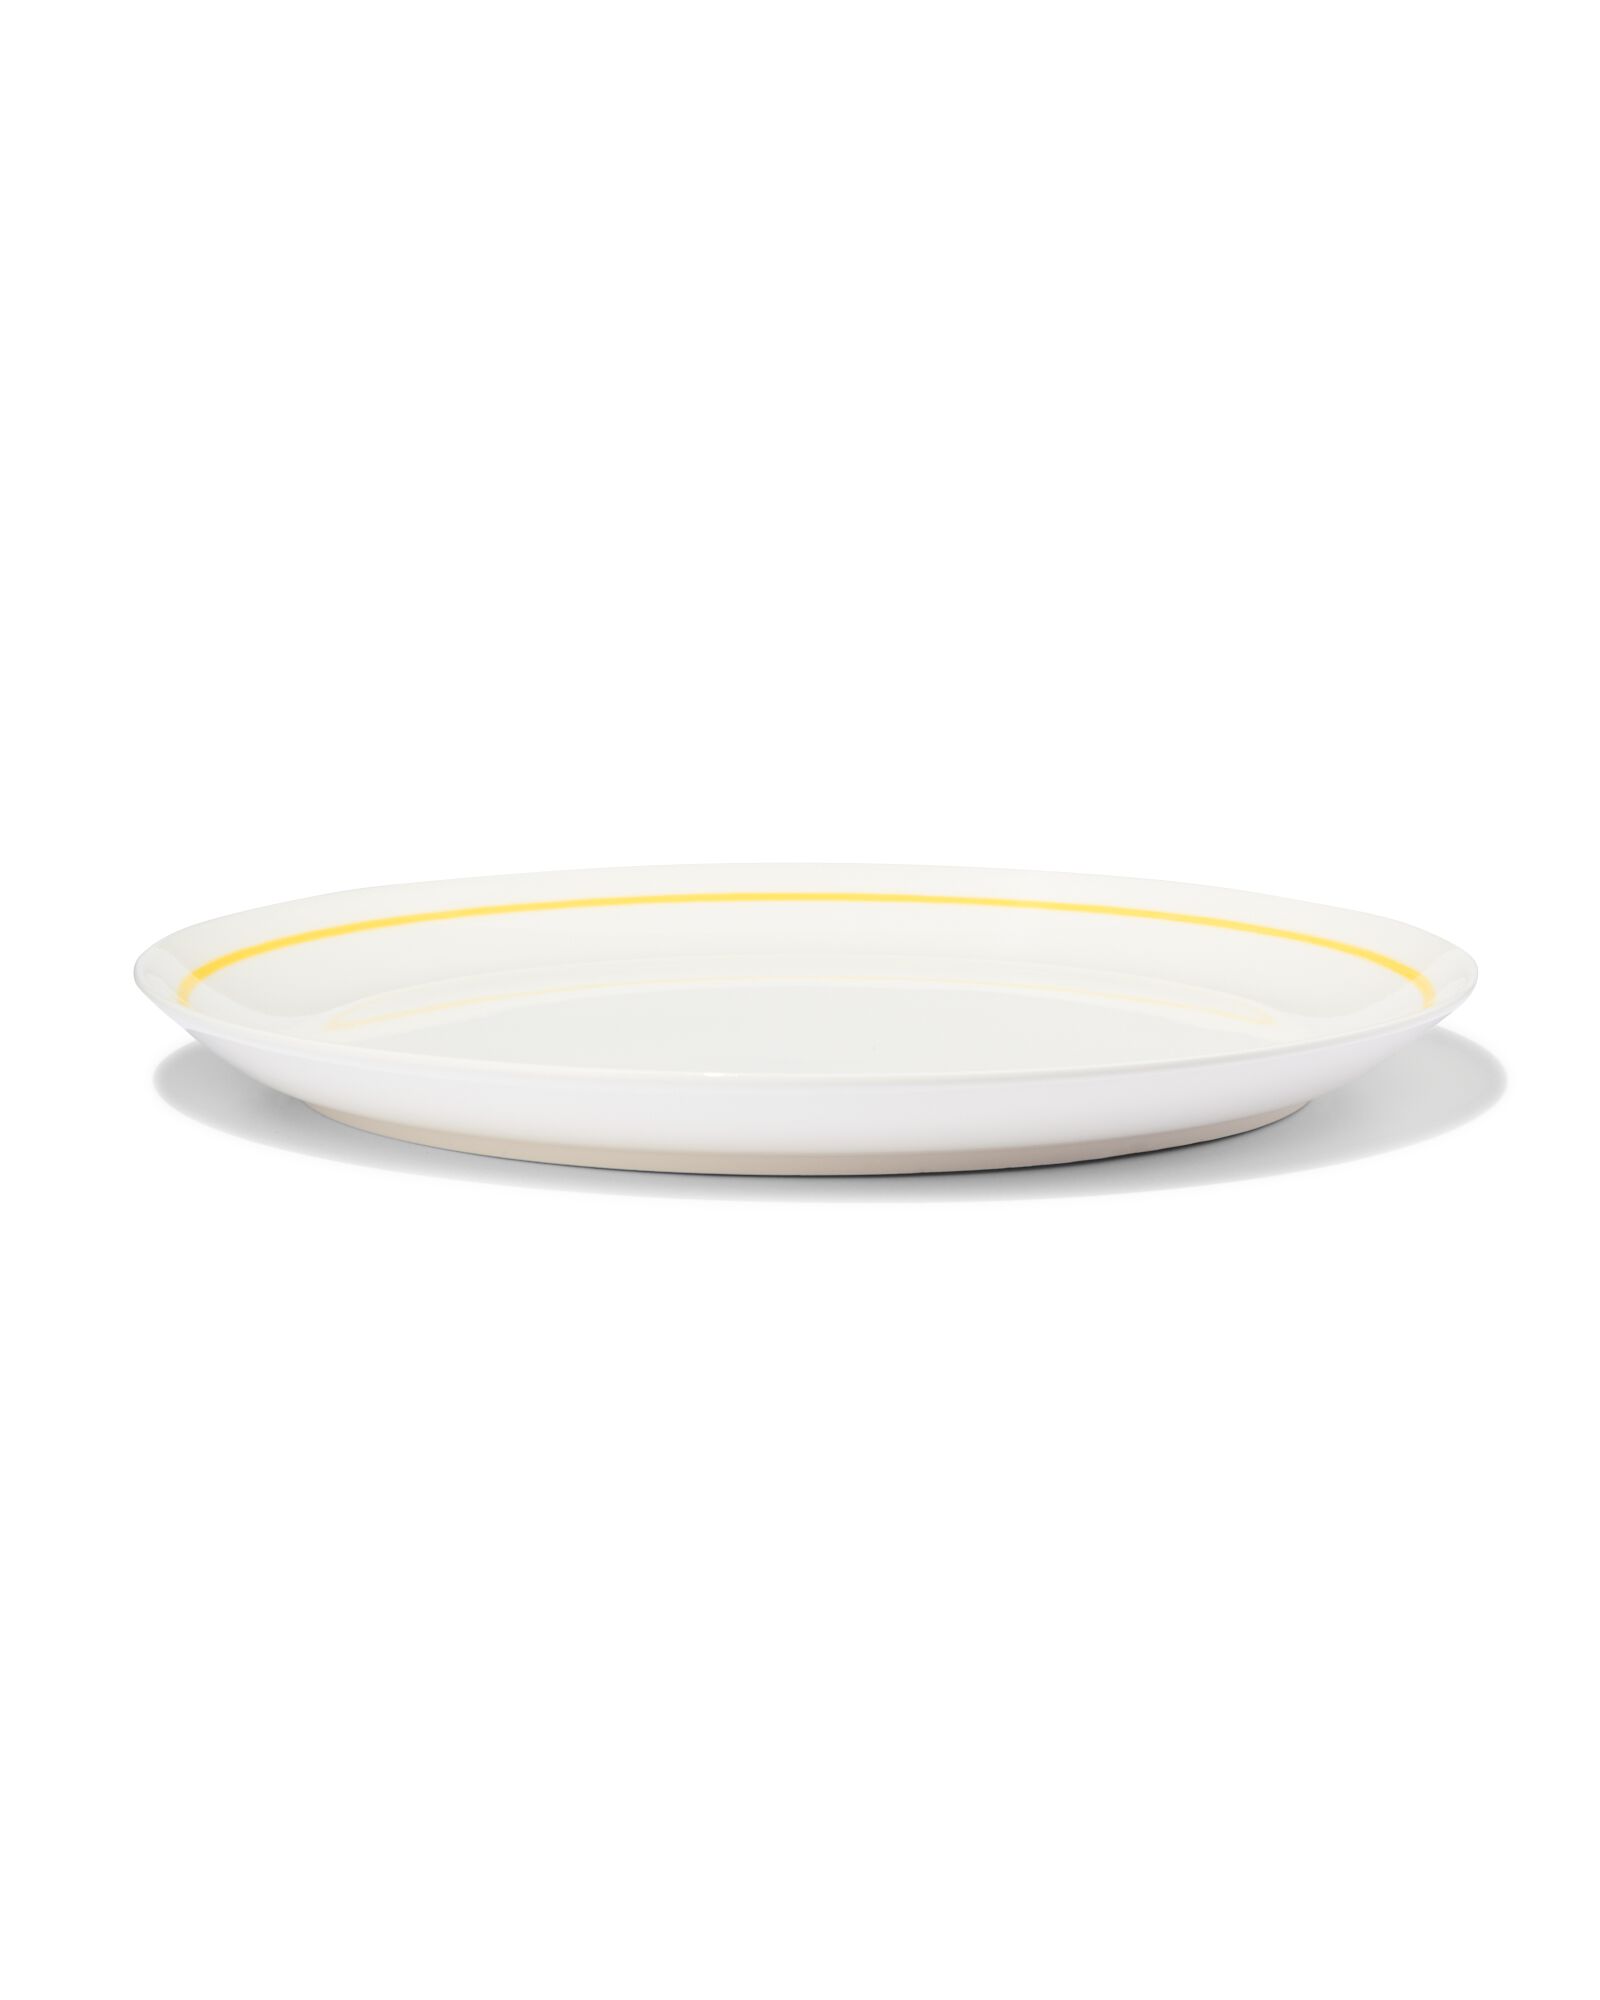 hema assiette plate ø26cm - new bone blanc et jaune - vaisselle dépareillée (white)